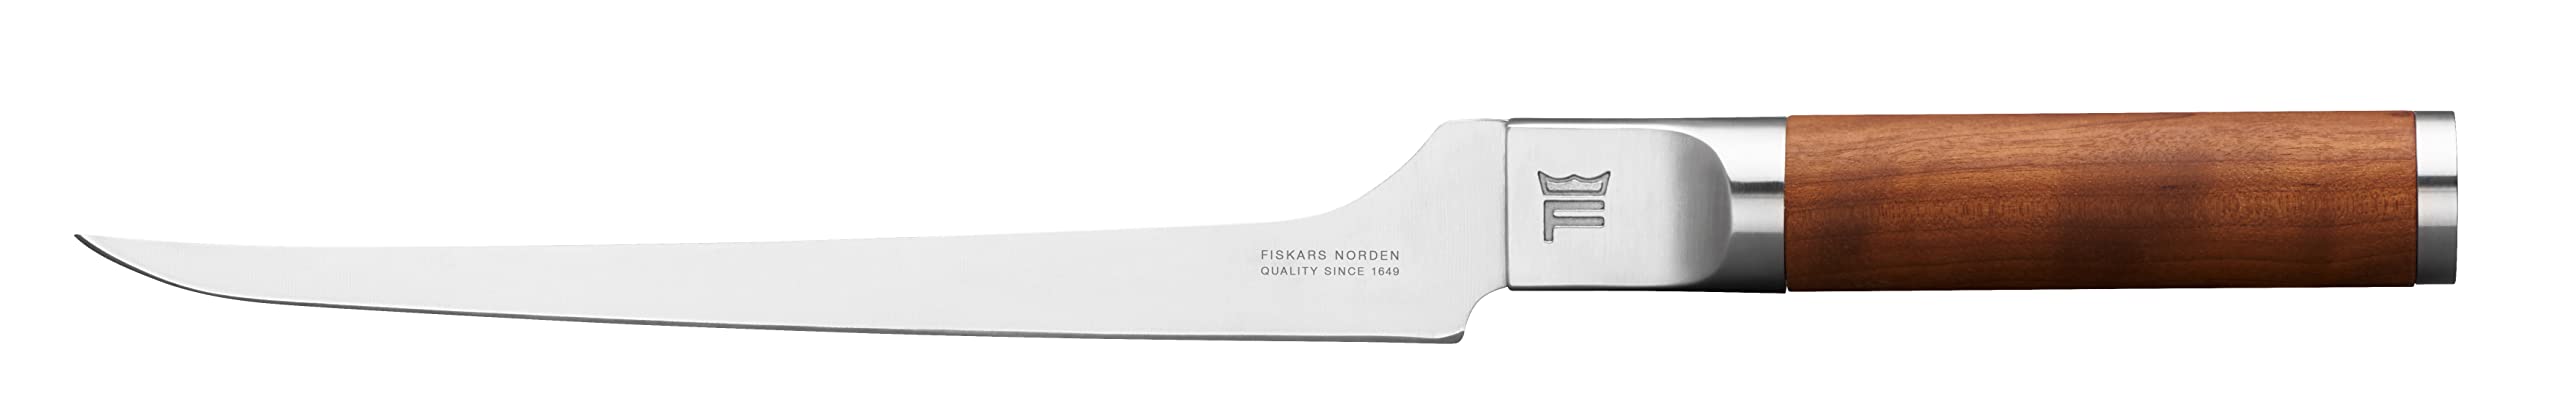 Fiskars de filetear, Norden 1026423 Standard